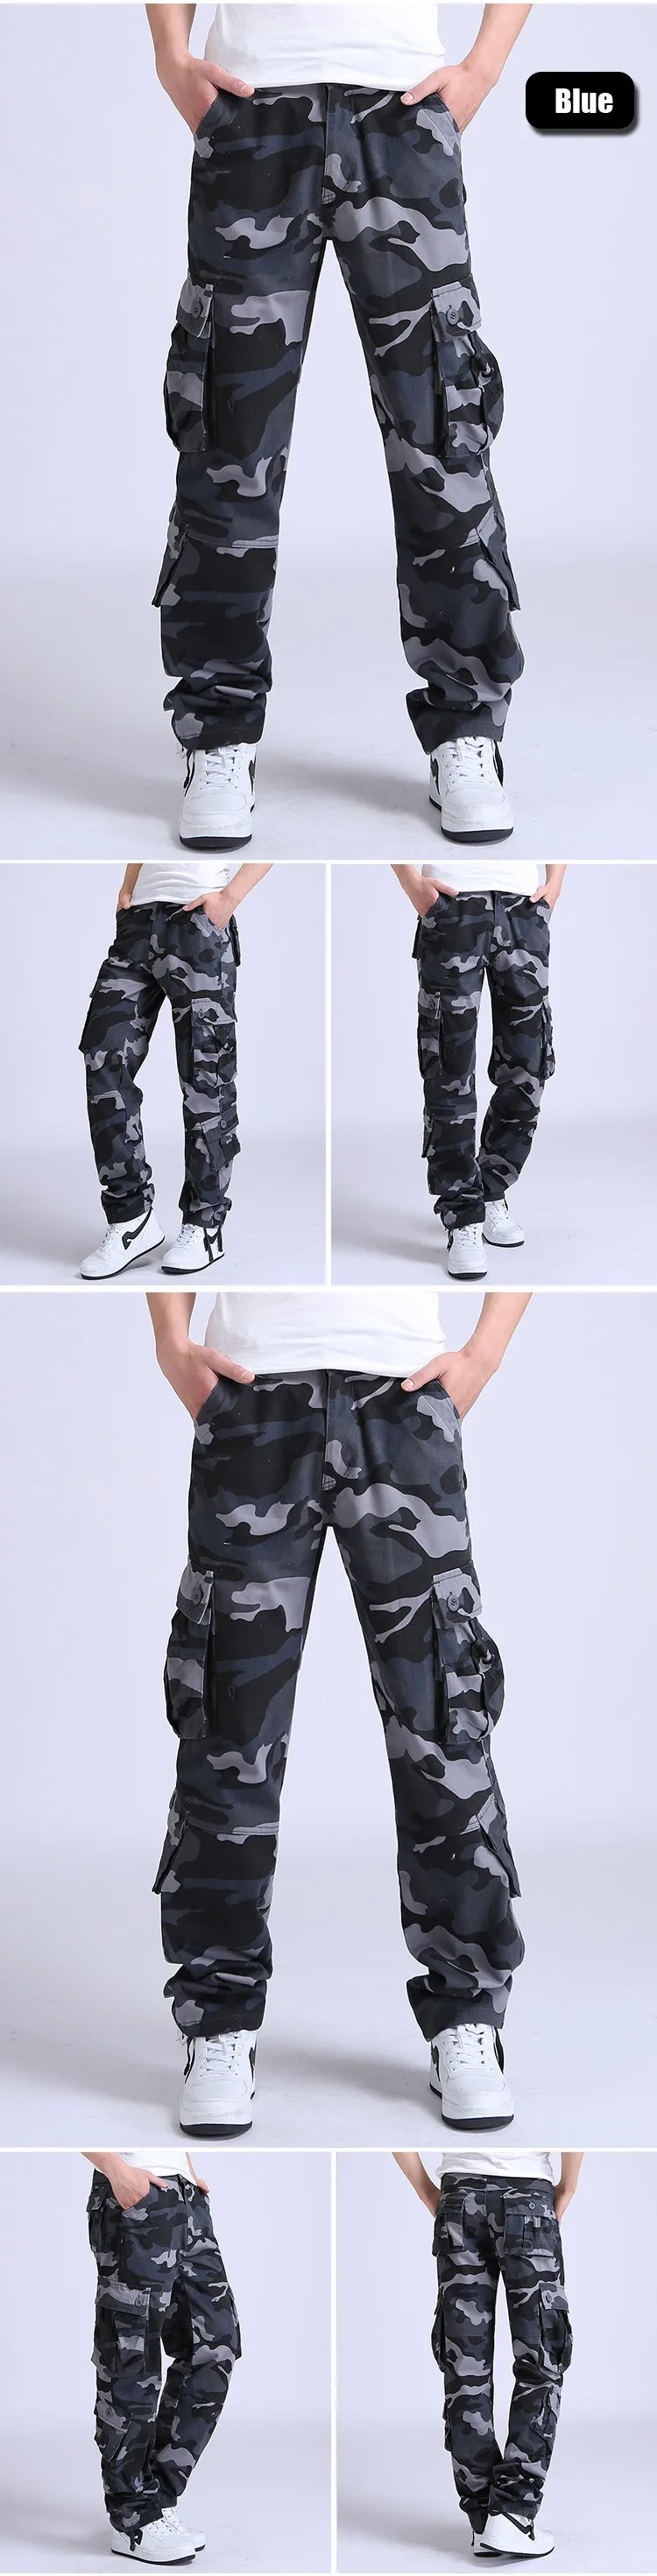 YOLAO высокое качество мужские брюки карго военные для мужчин Мульти карман комбинезоны тактические армейские брюки камуфляж Мода